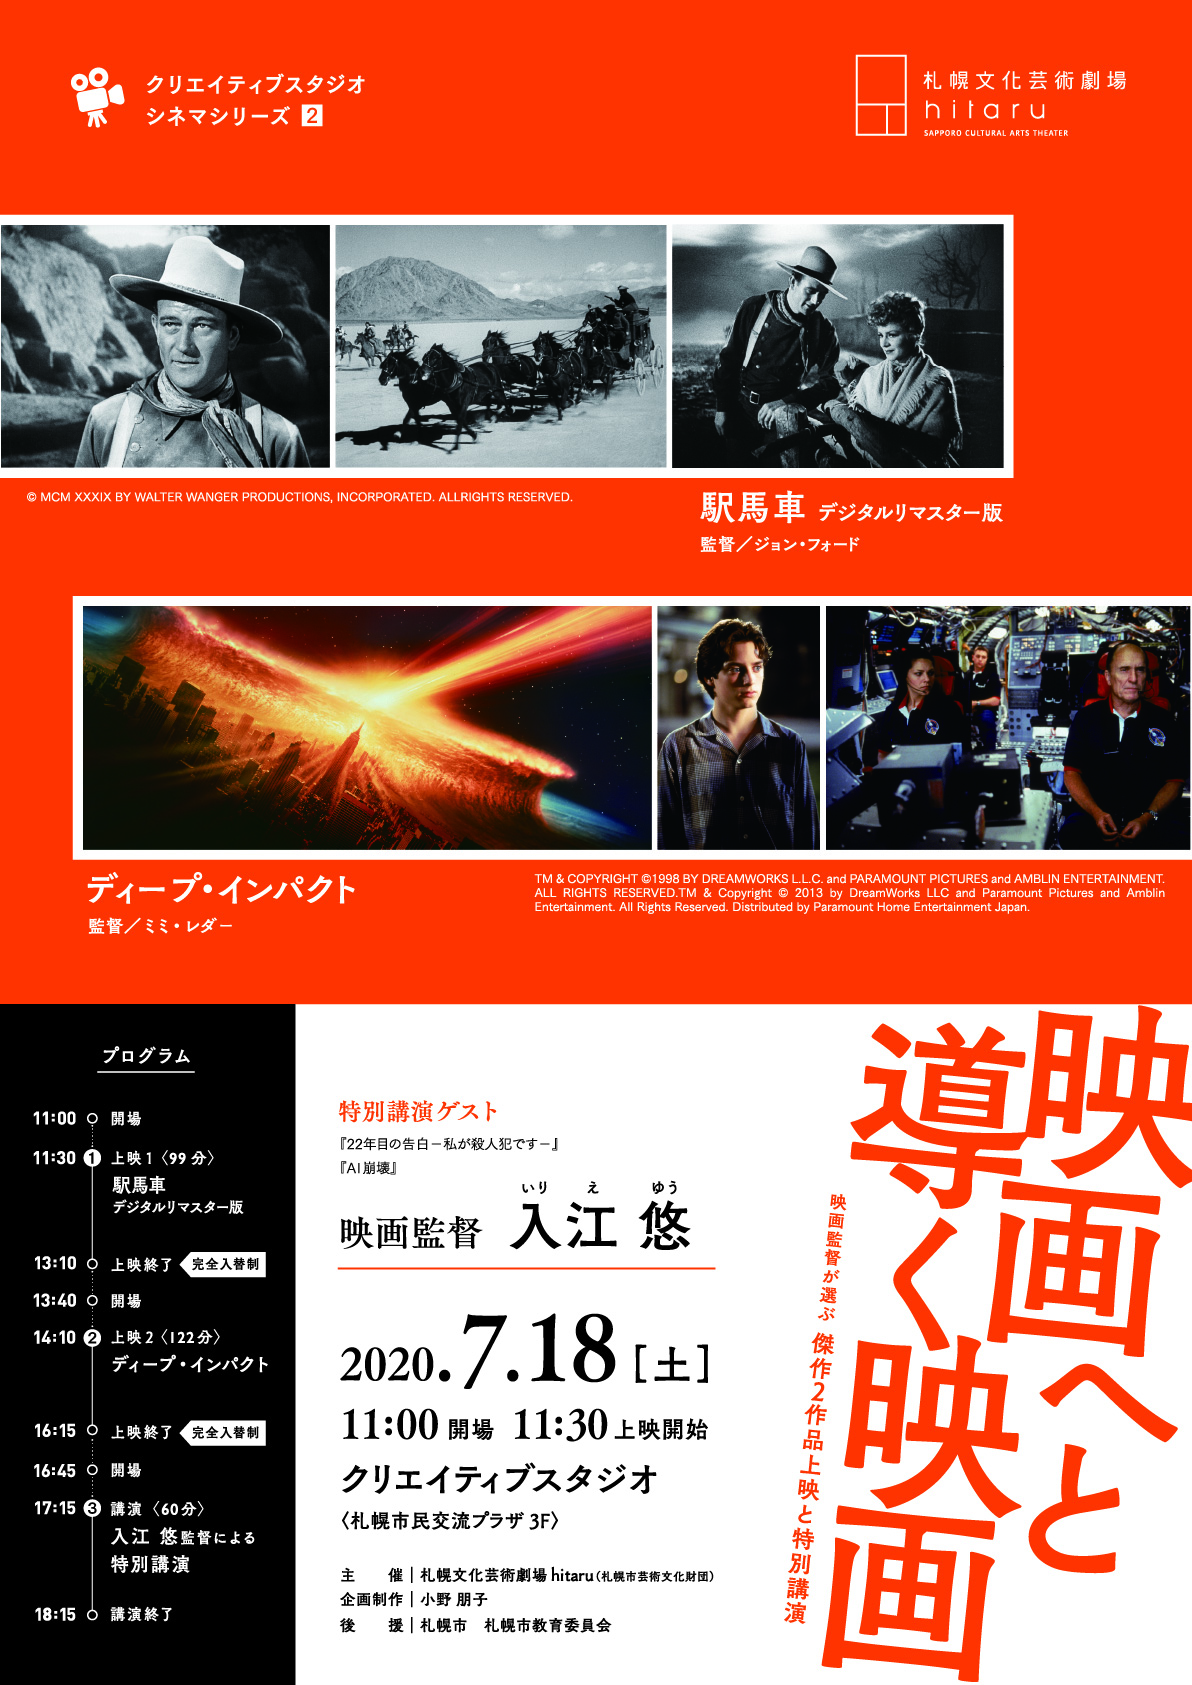 クリエイティブスタジオ シネマシリーズ-2 映画へと導く映画 イベント情報 札幌市民交流プラザ